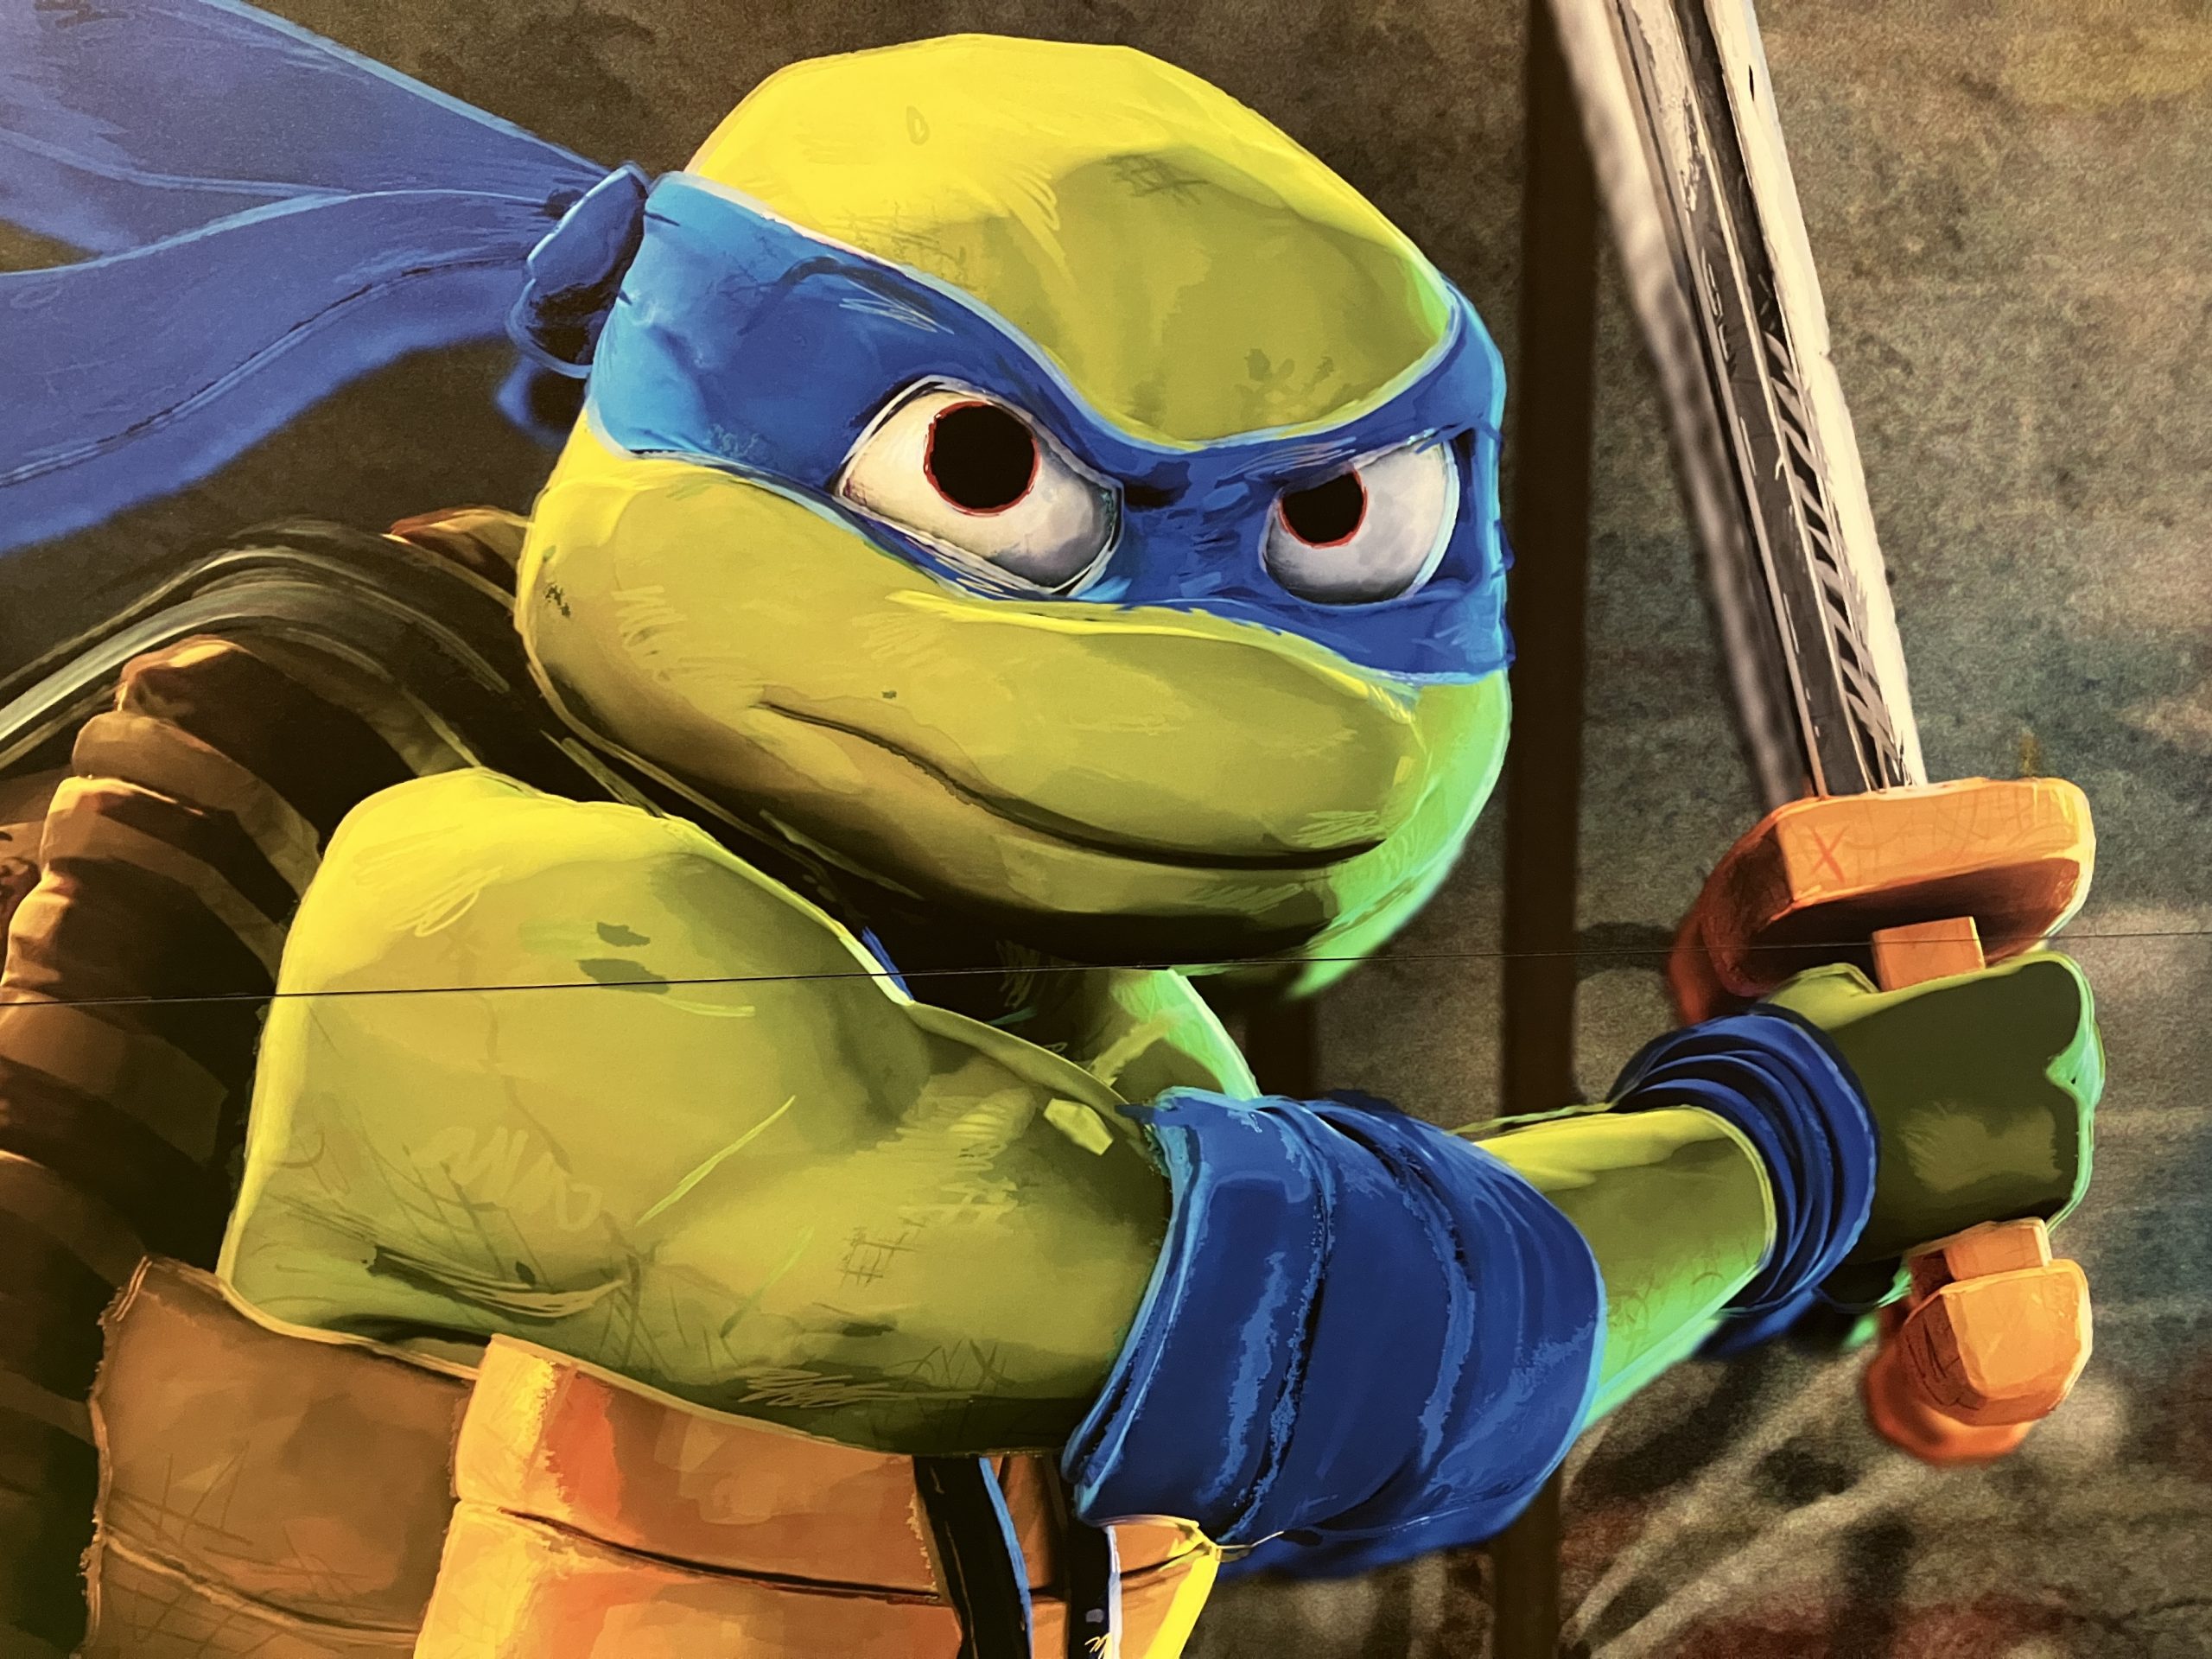 New Teenage Mutant Ninja Turtles Movie Makes Franchise History